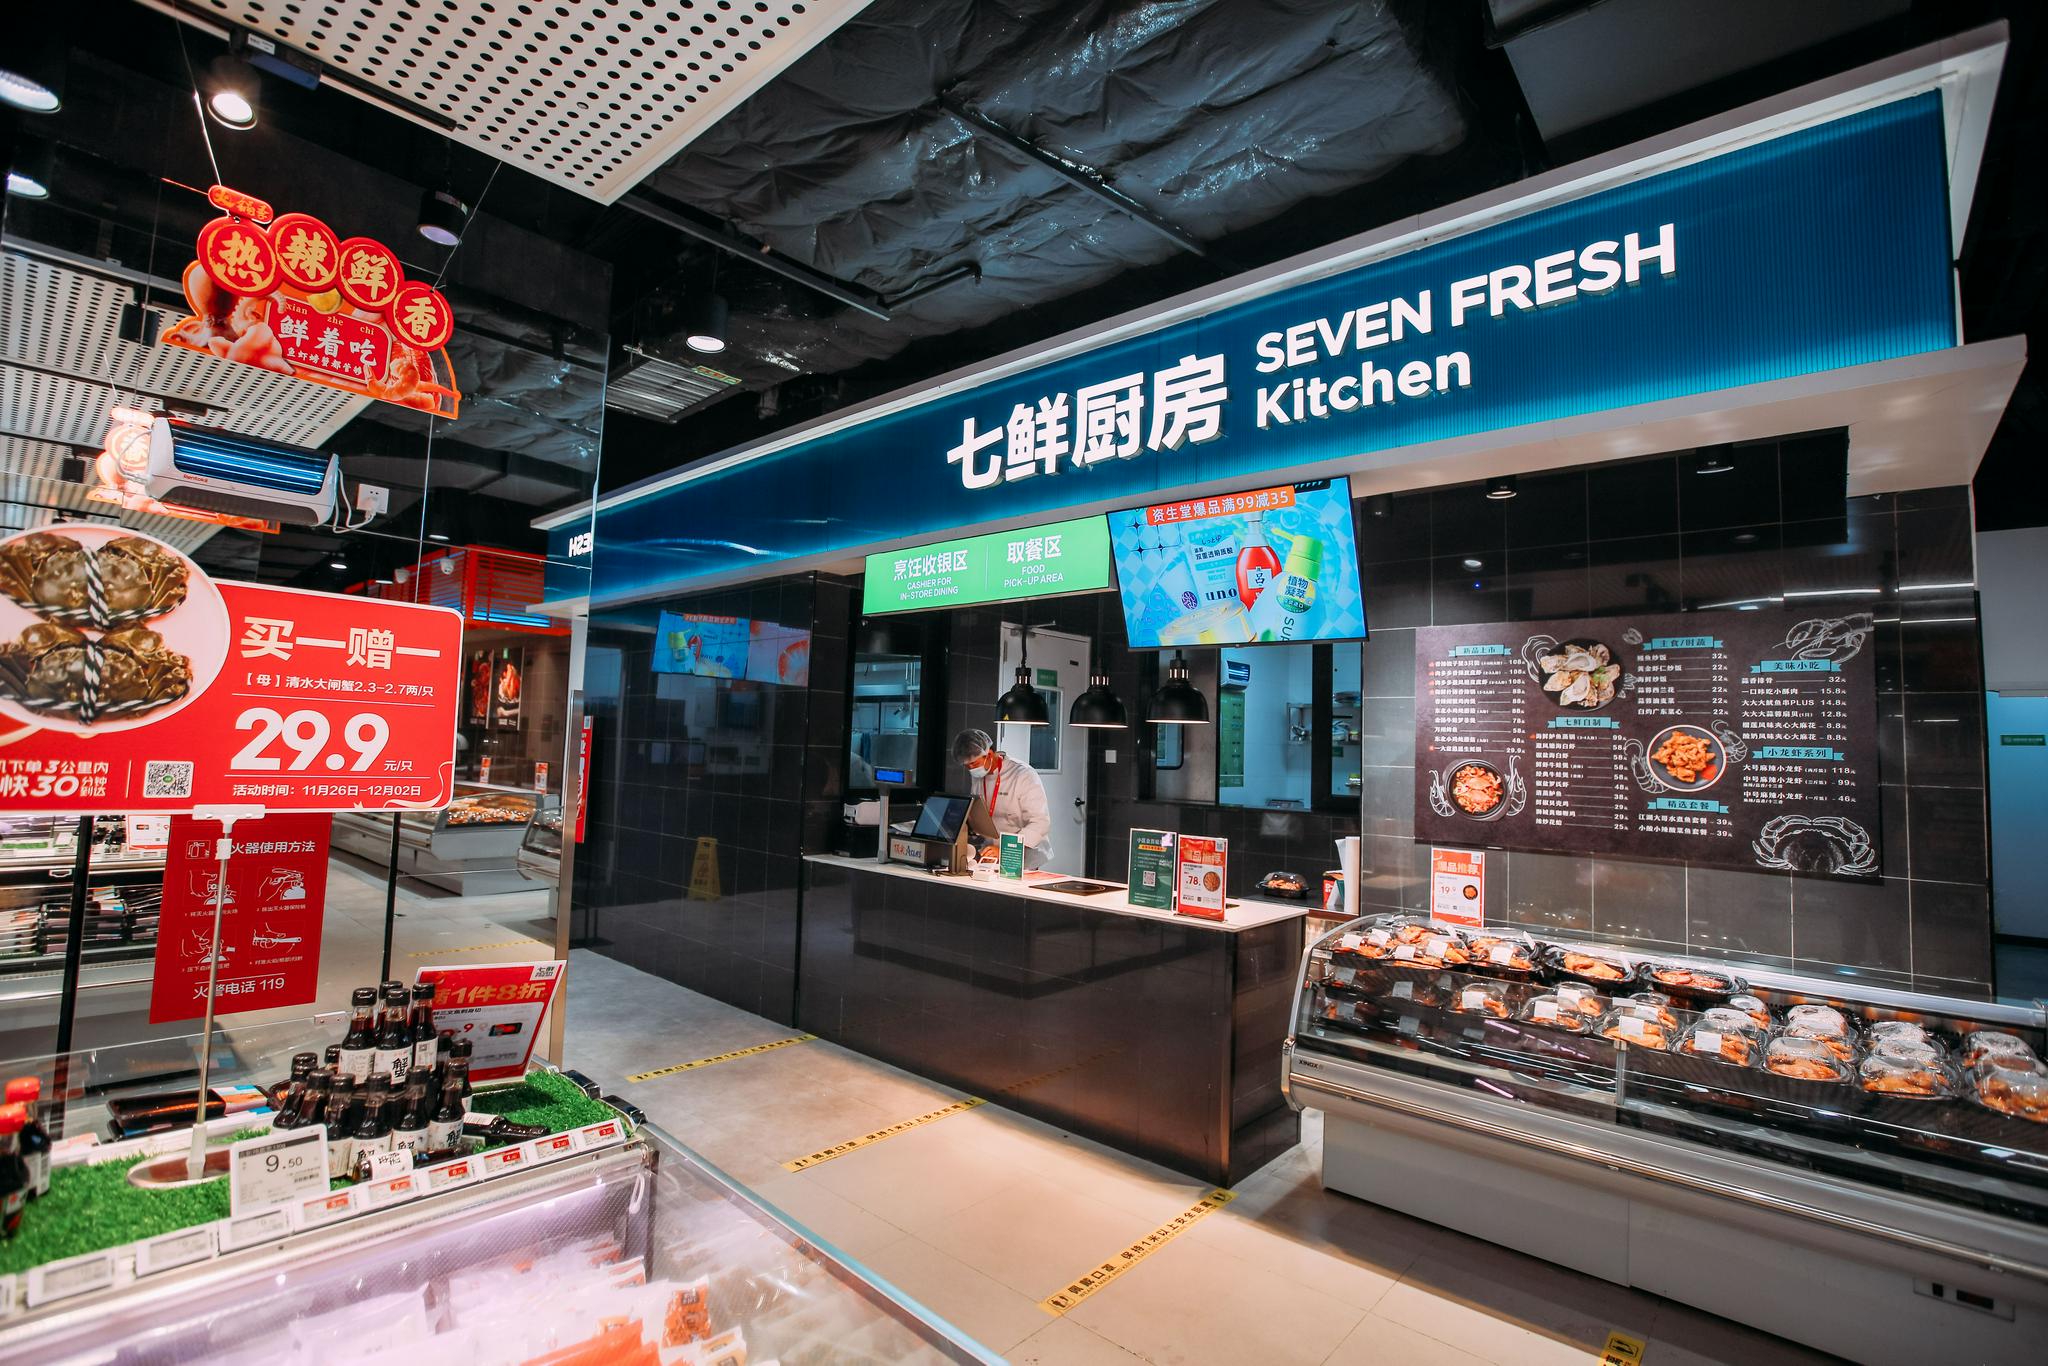 为了满足消费者多元化,特色化的饮食需求,七鲜新店在